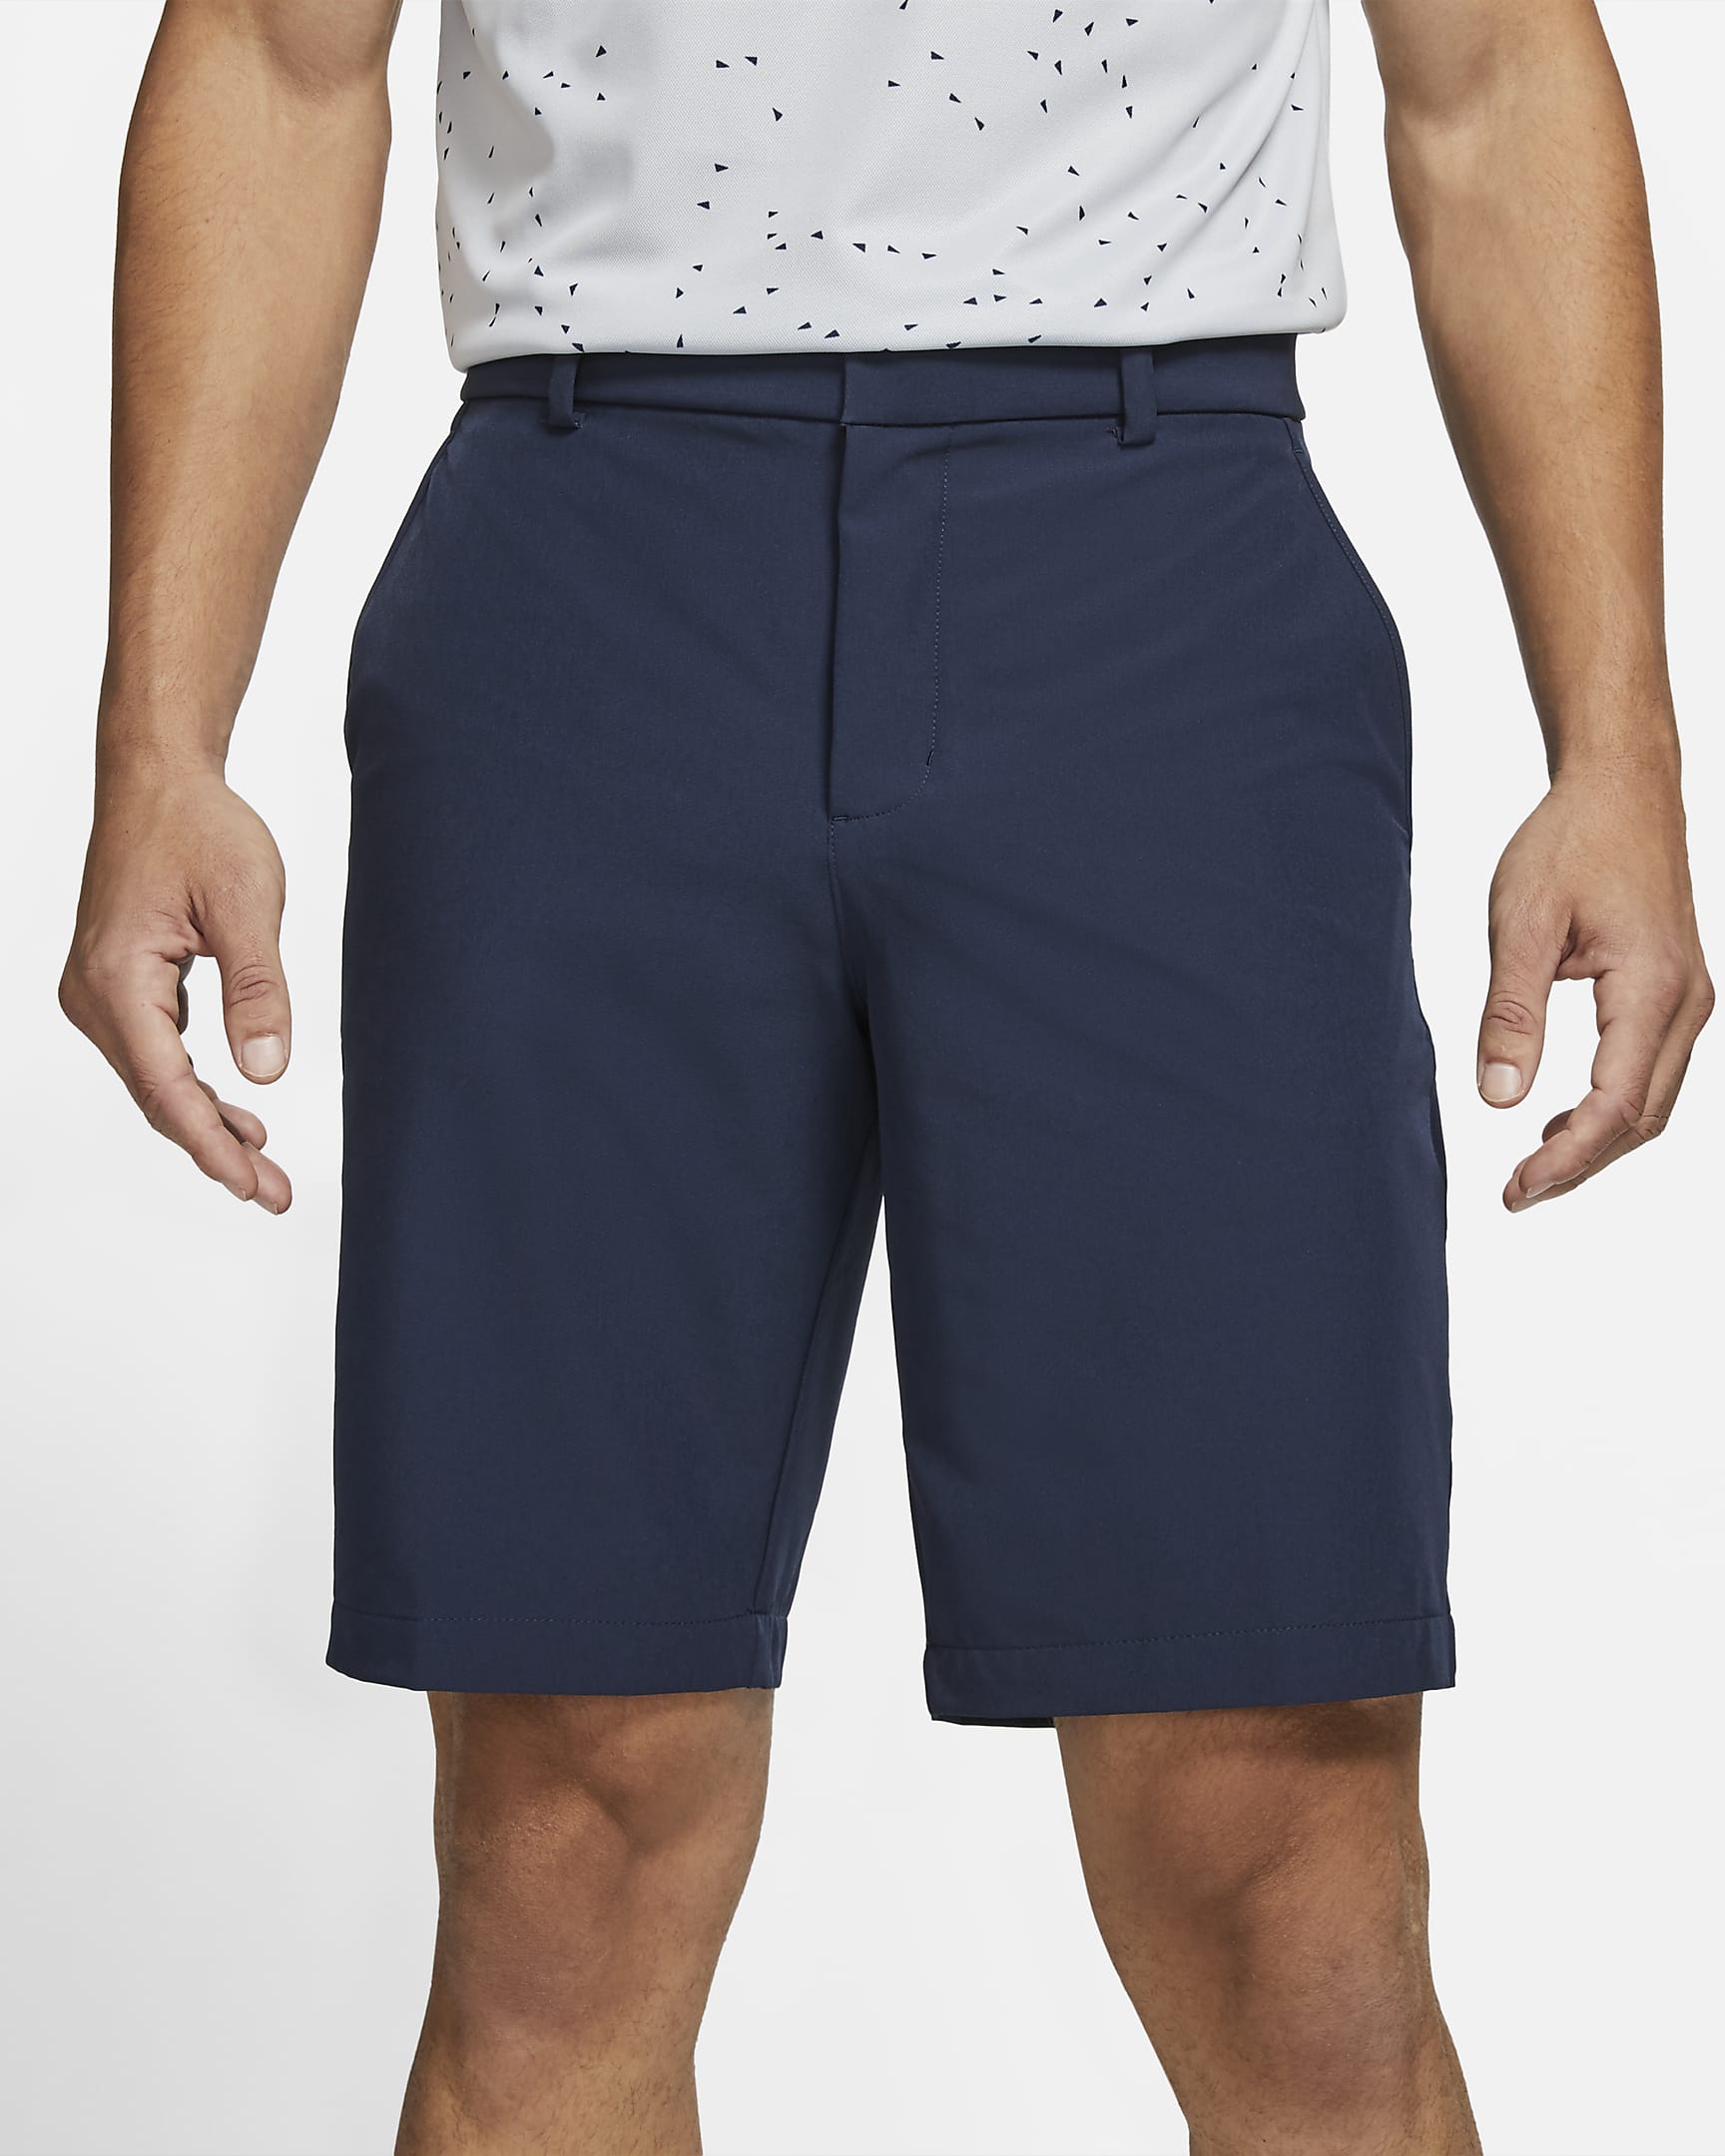 Nike Dri-FIT Men's Golf Shorts. Nike.com